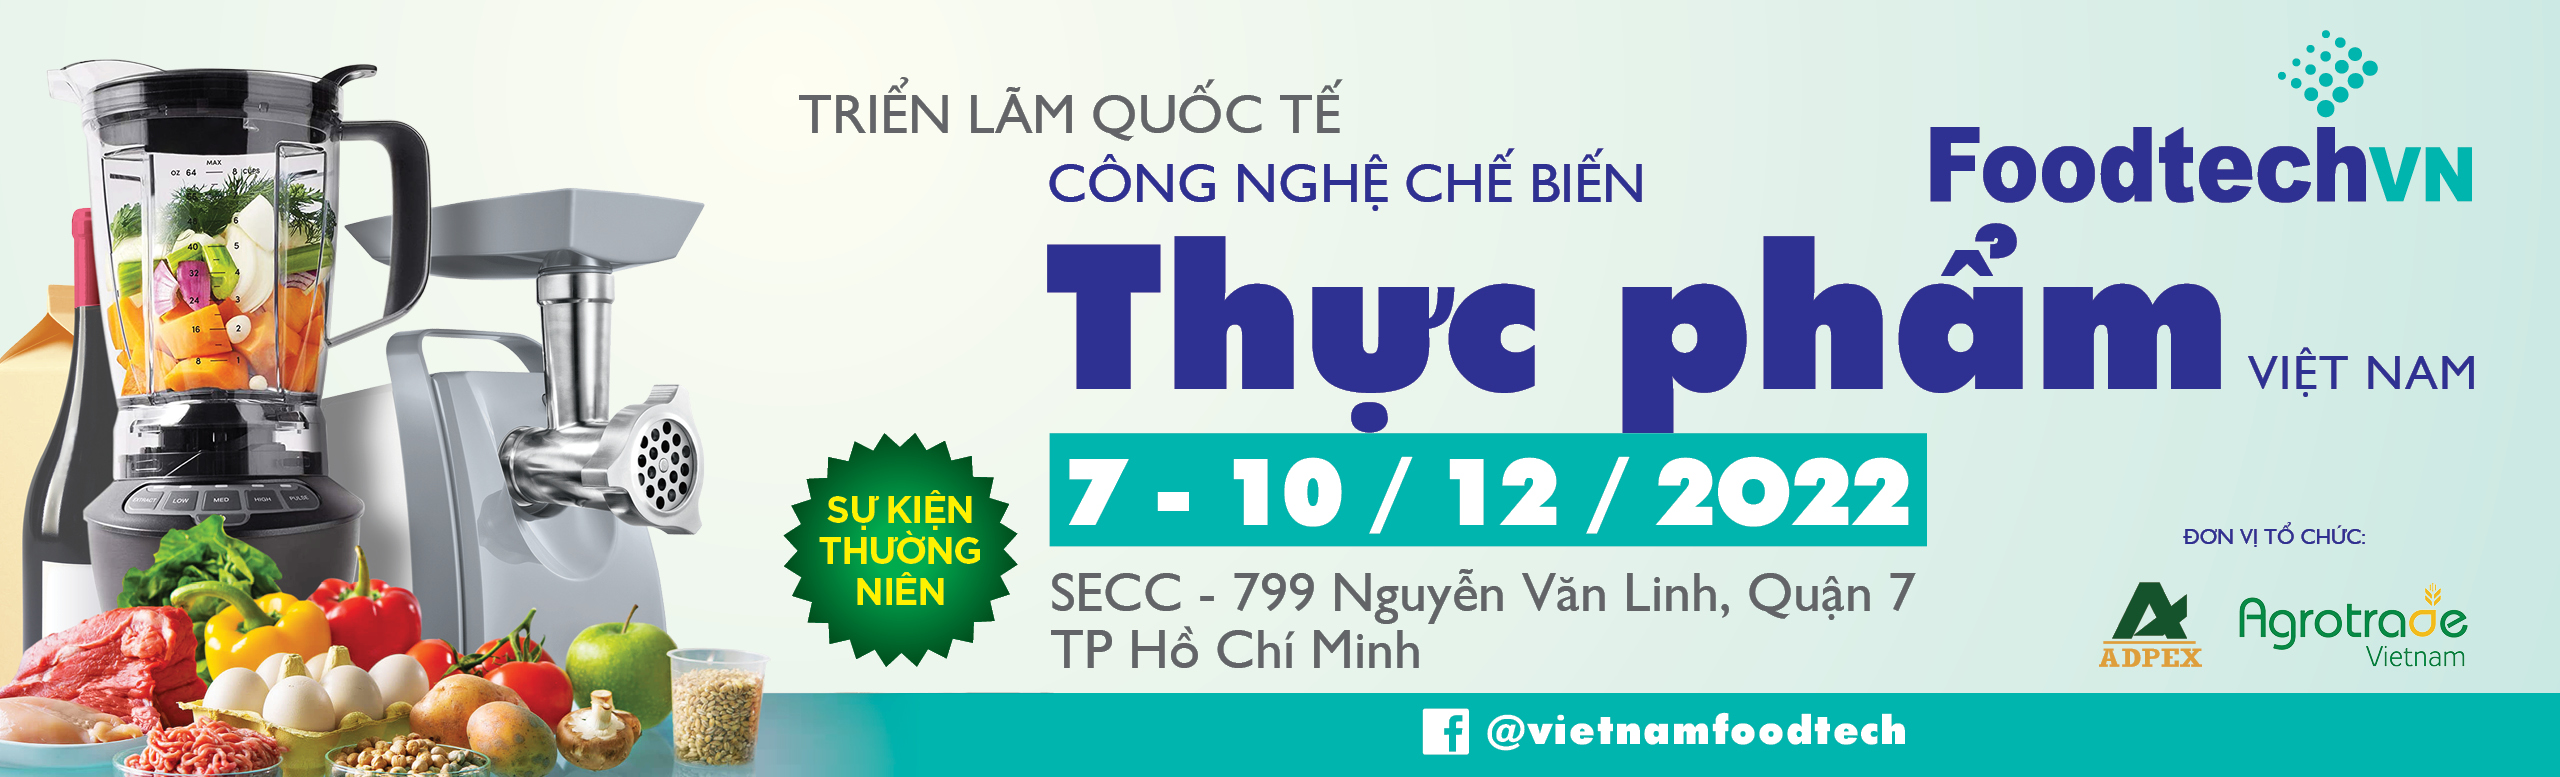 Triển lãm Quốc tế công nghệ chế biến Thực phẩm Việt Nam